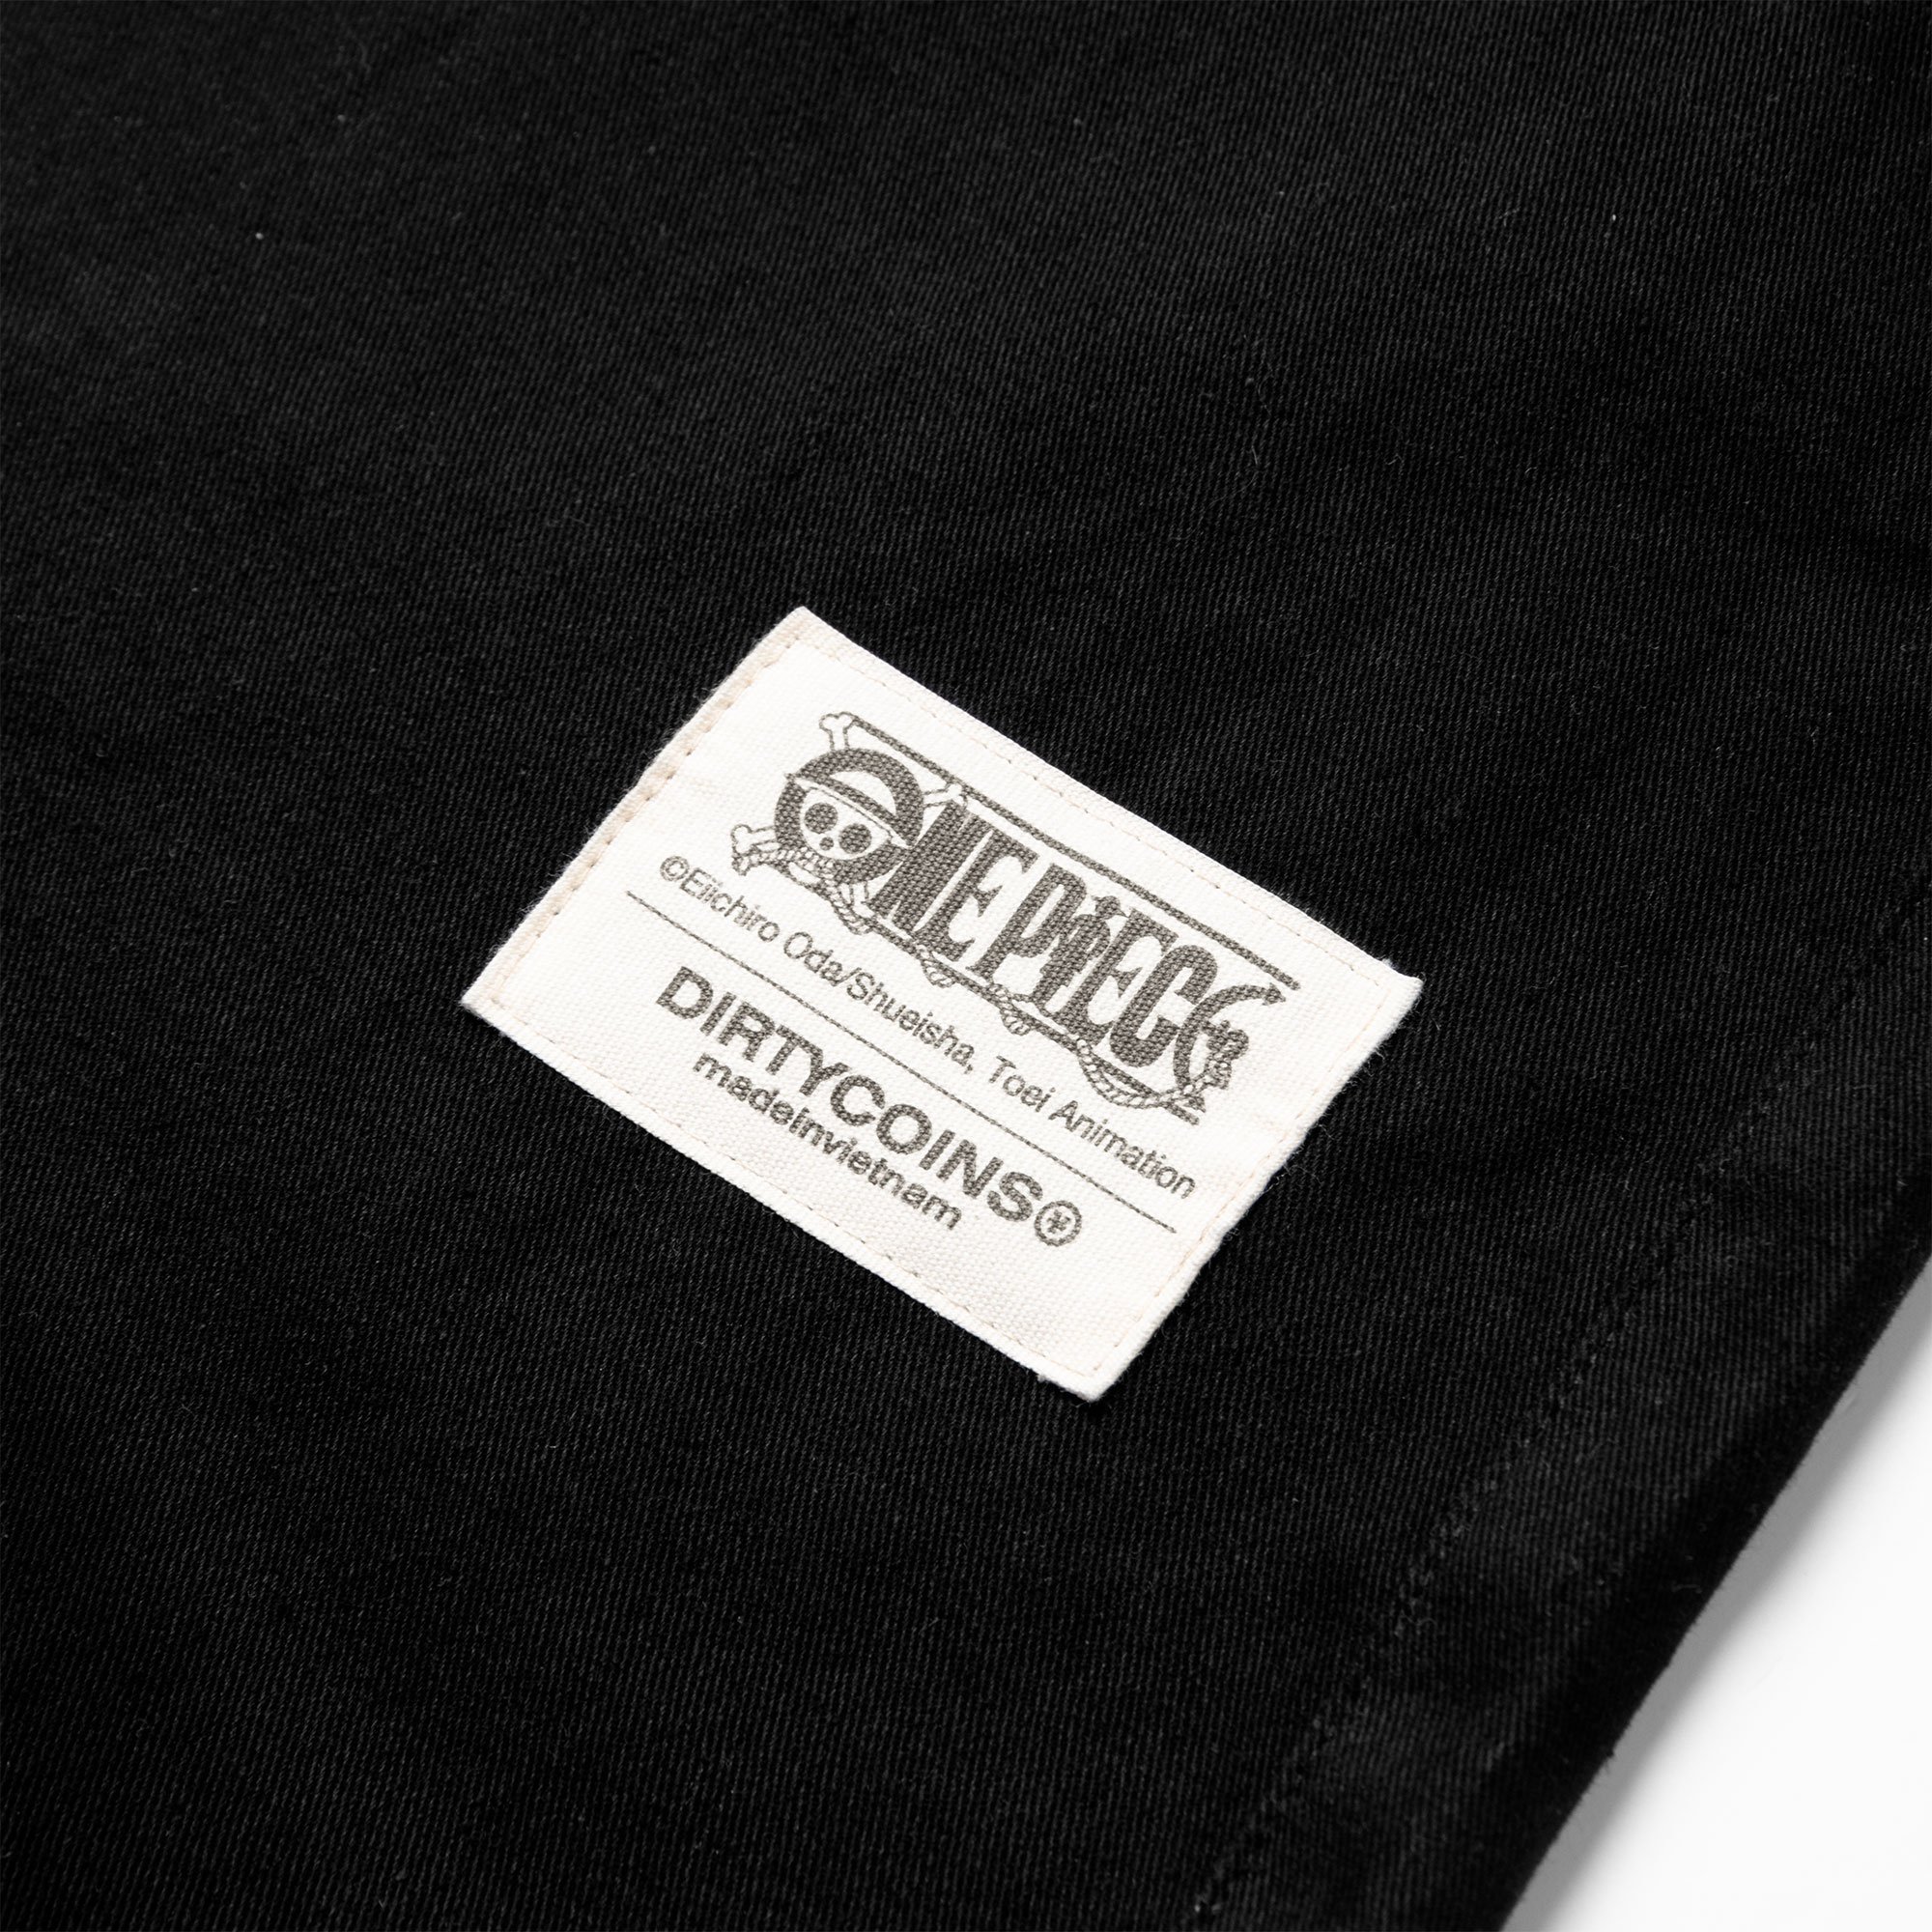 DC x OP Logo Print Khaki Pants - Black